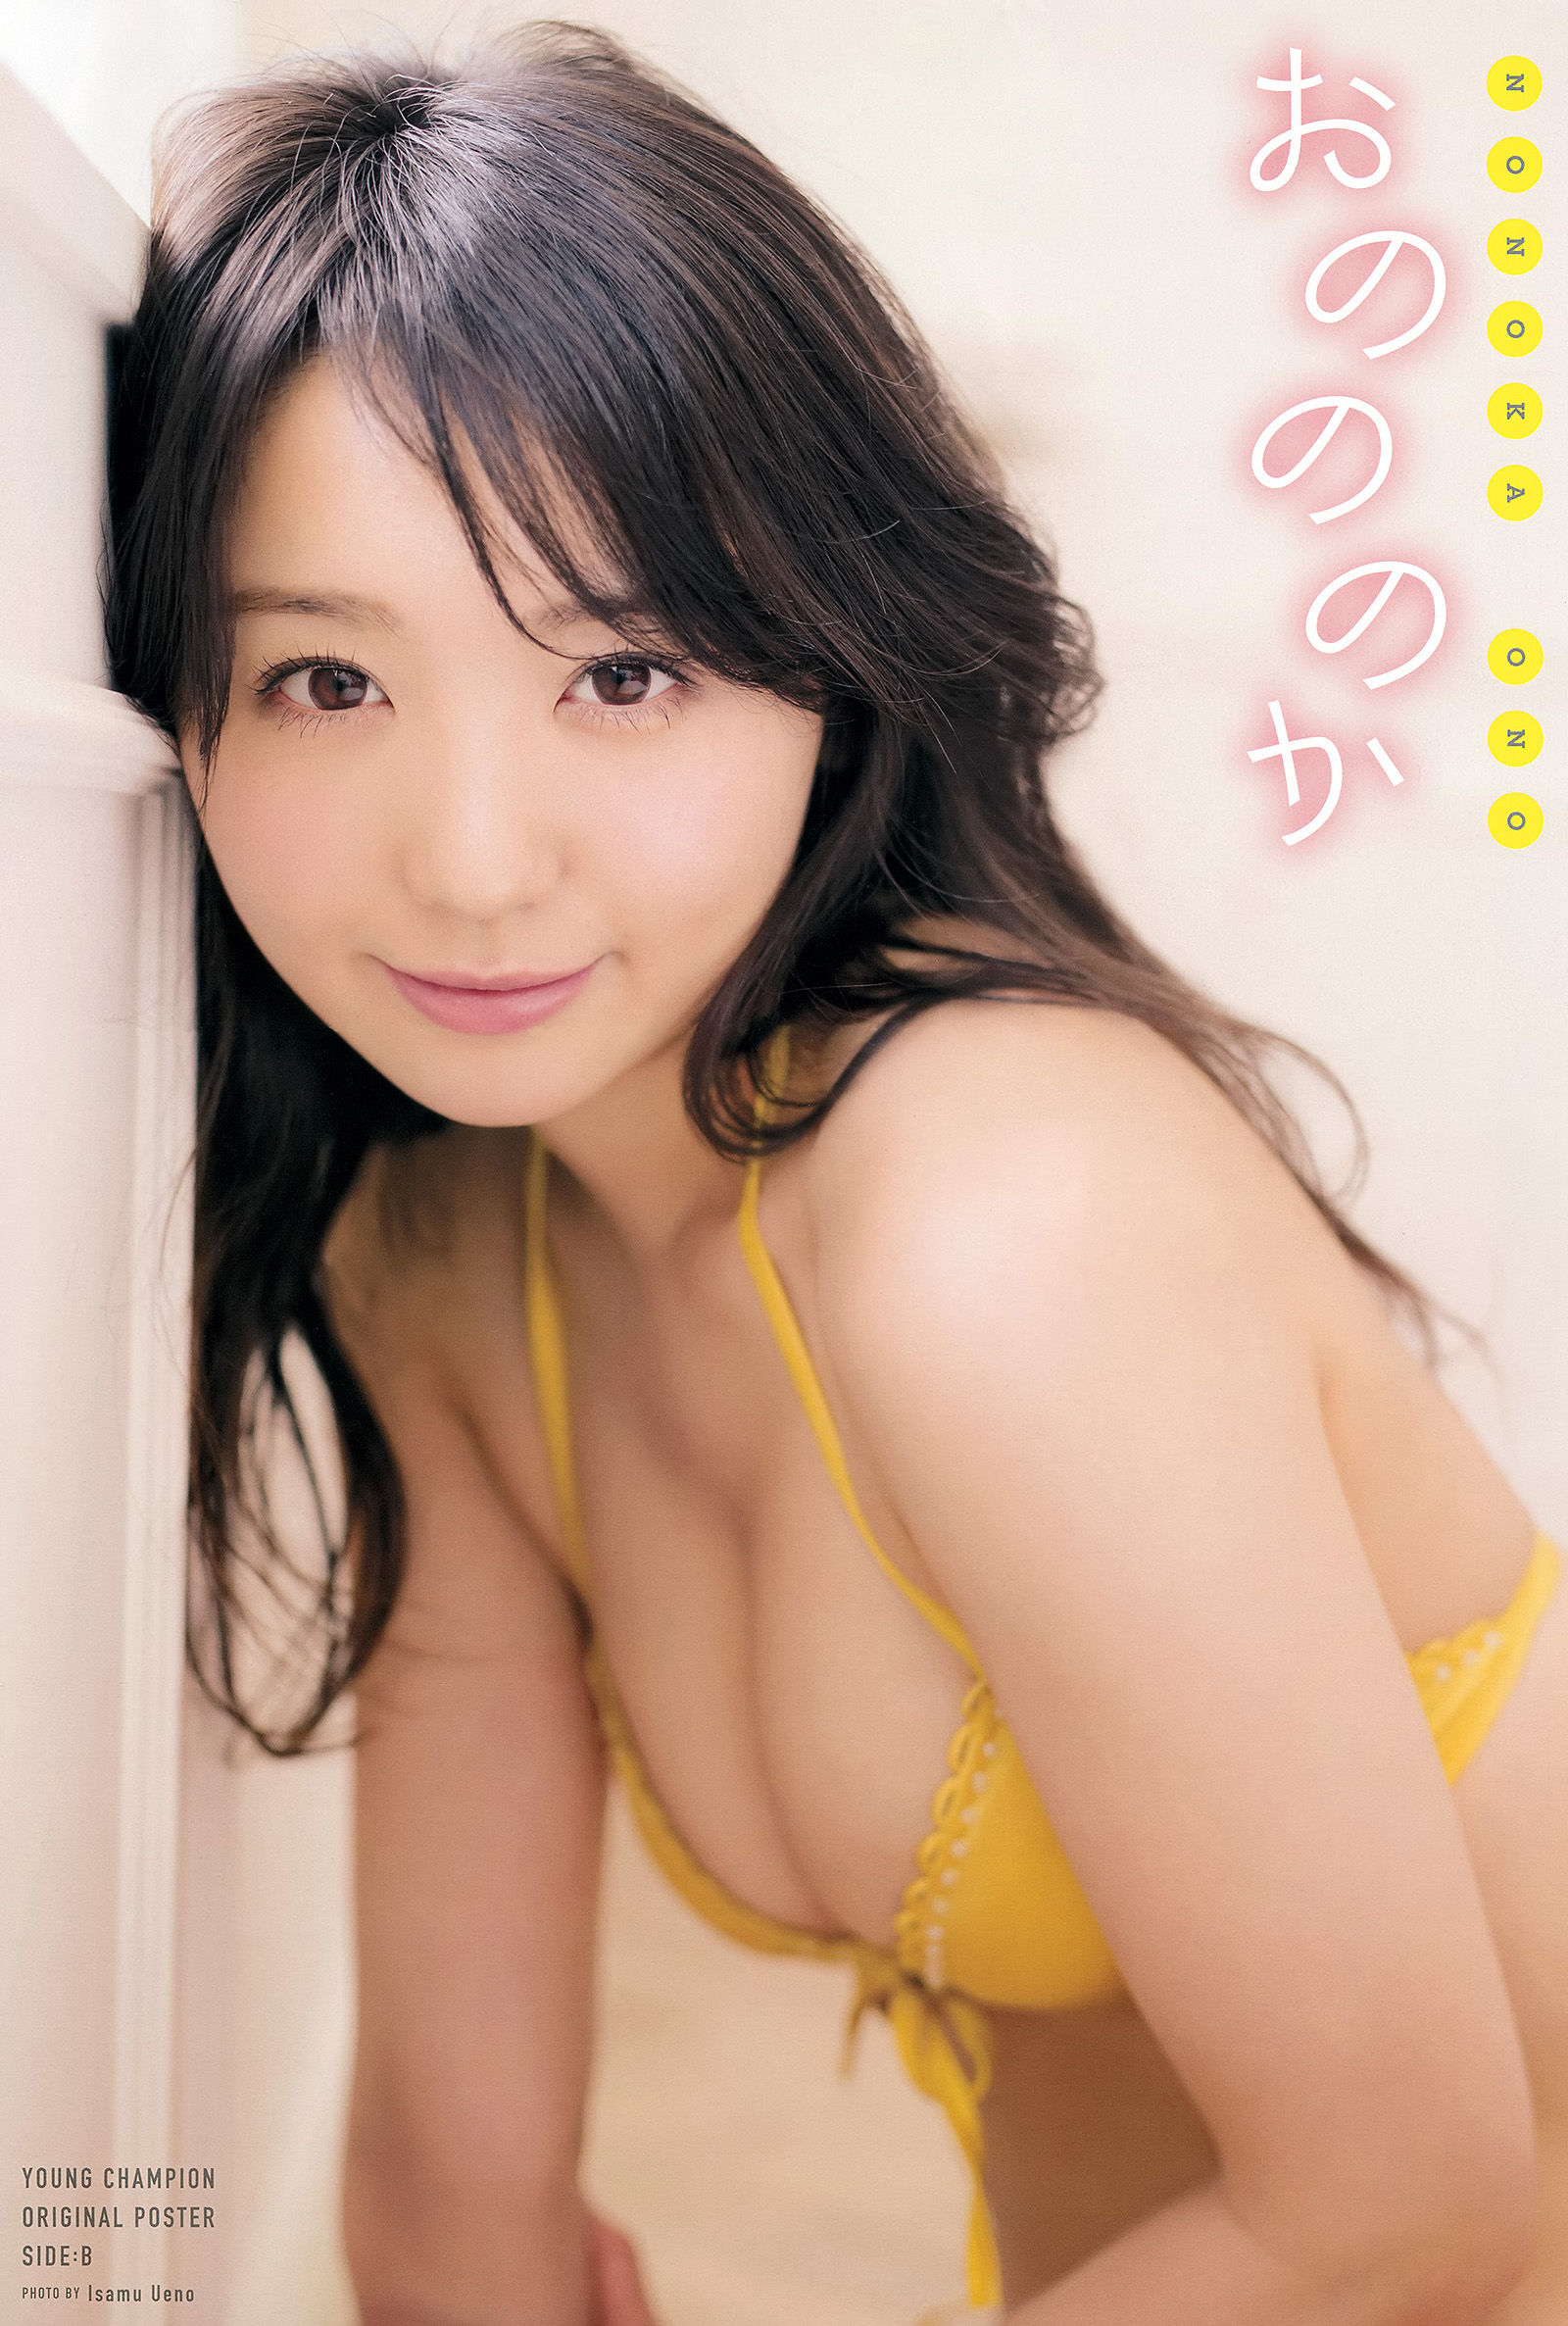 [Młody Czempion] Nonoka Ono Rina Hashimoto 2015 nr 13 Zdjęcie Strona 13 No.8d40f0